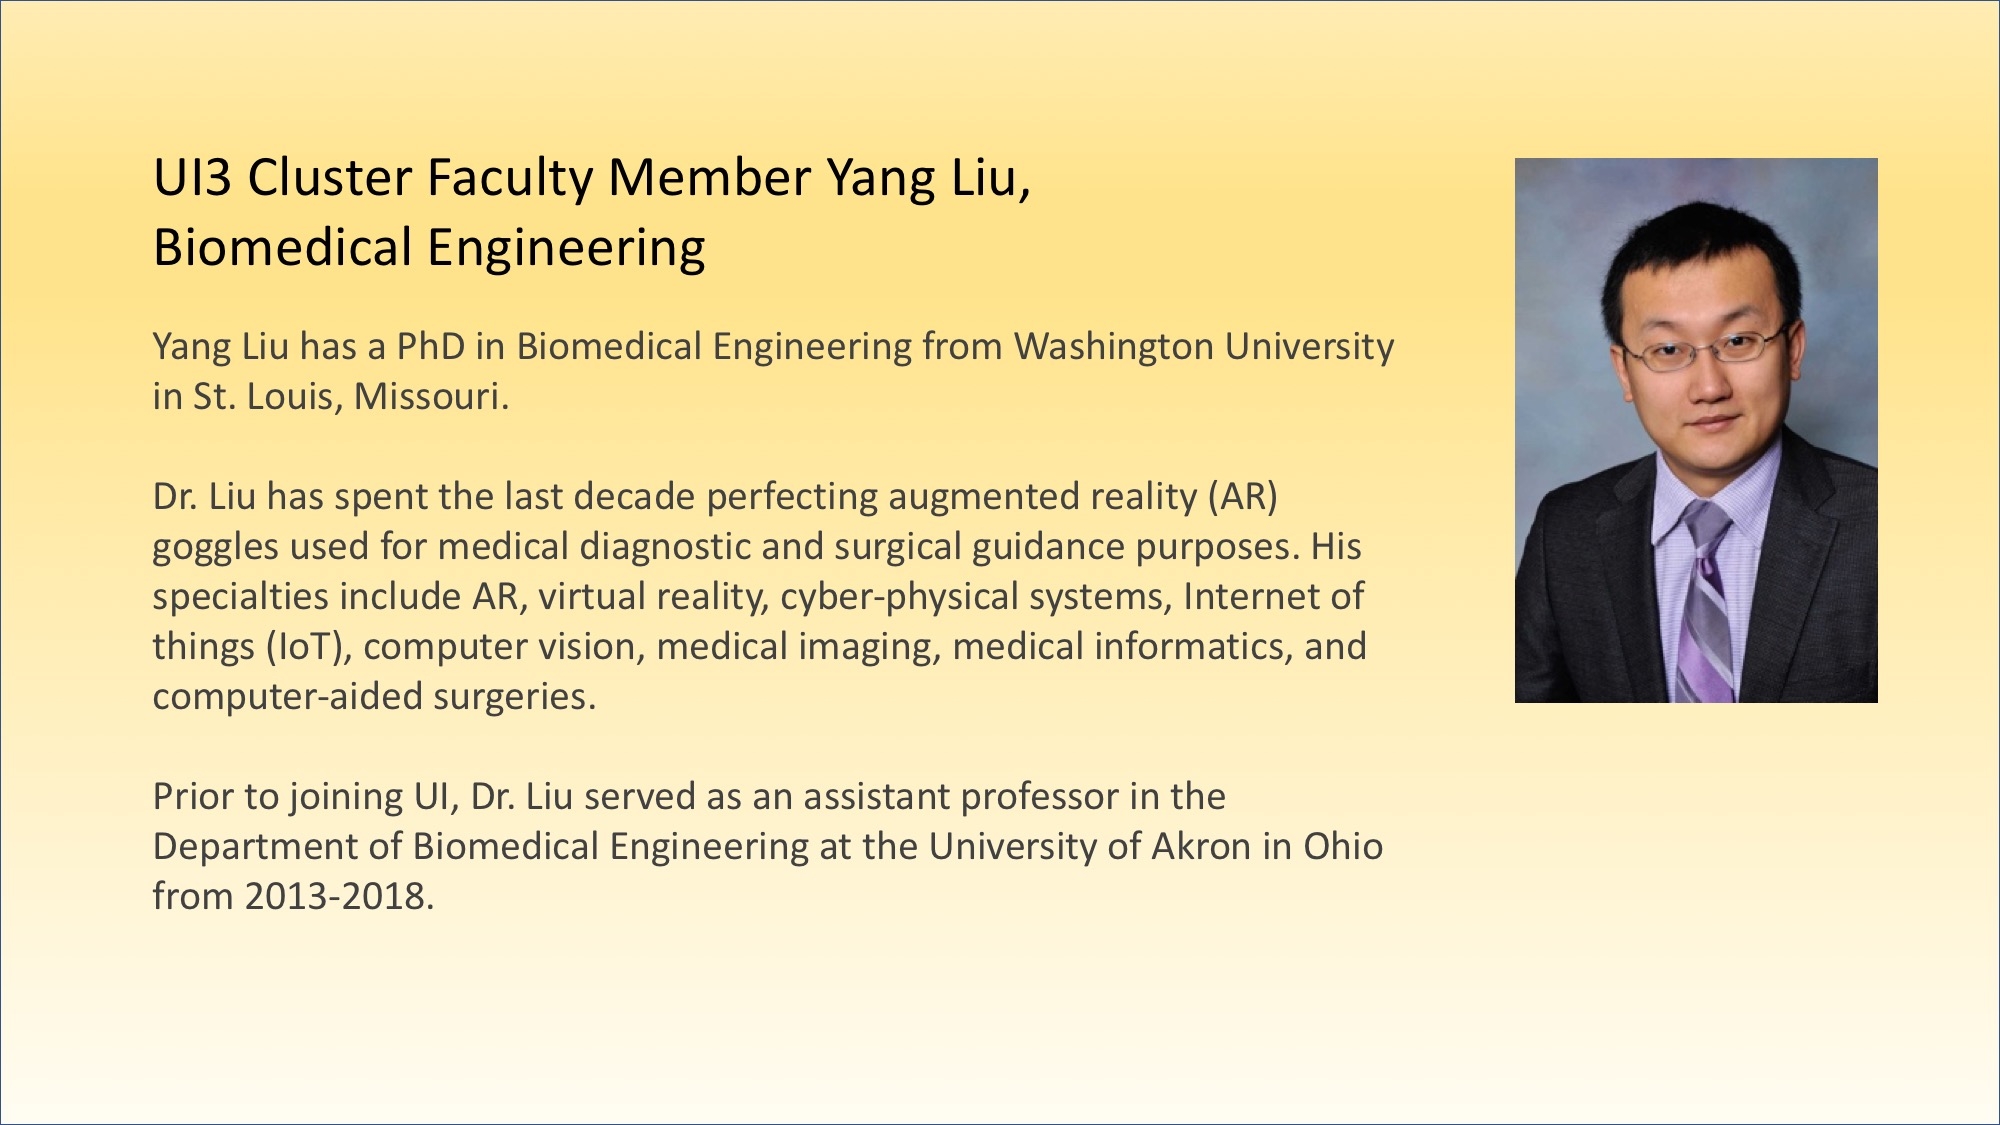 Yang Liu, UI3 Cluster Faculty Biomedical Engineering